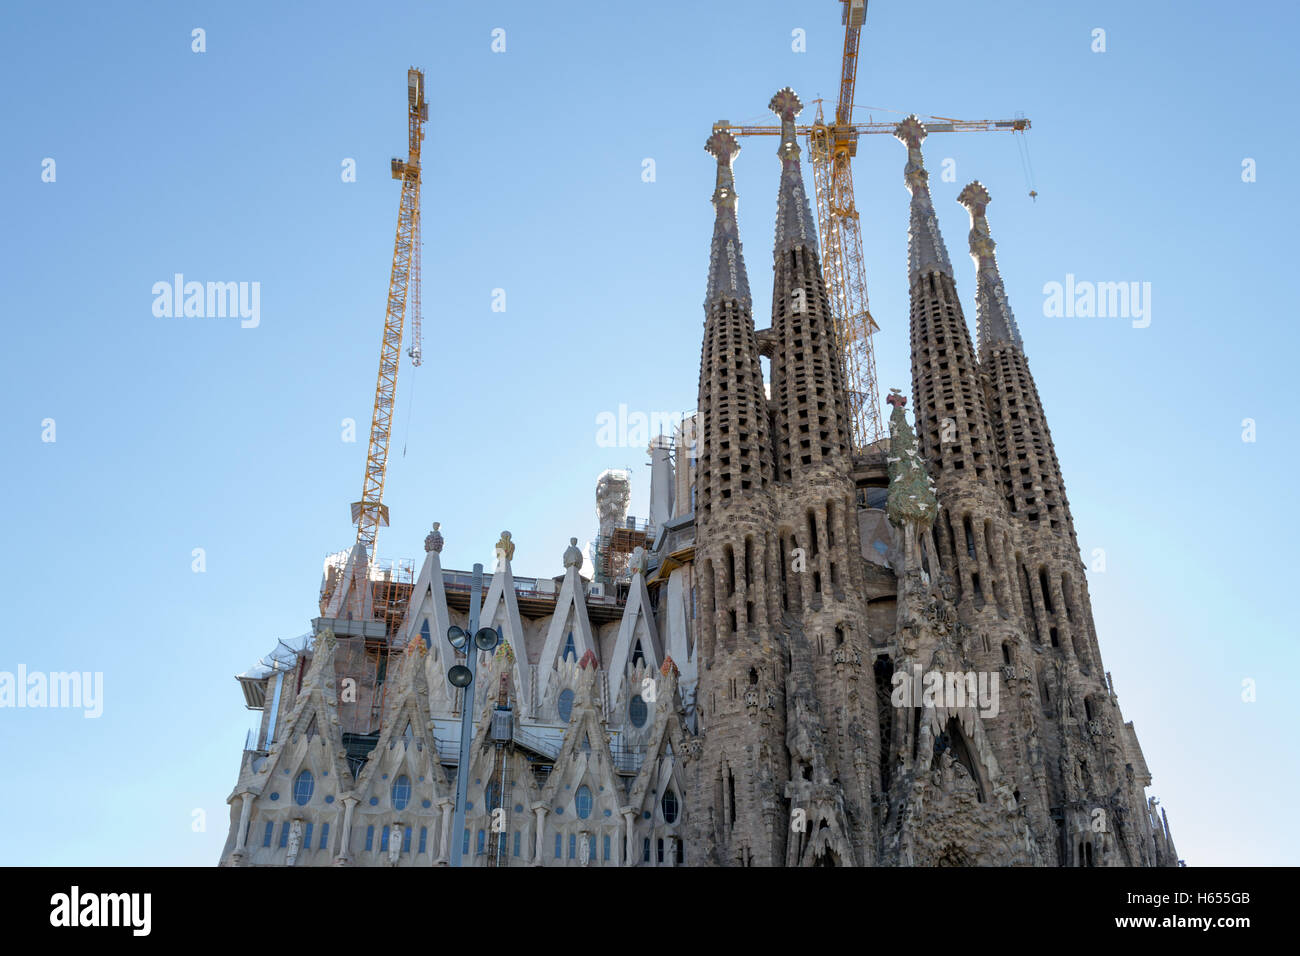 Basílica i Temple Expiatori de la Sagrada Família is one of the main ...